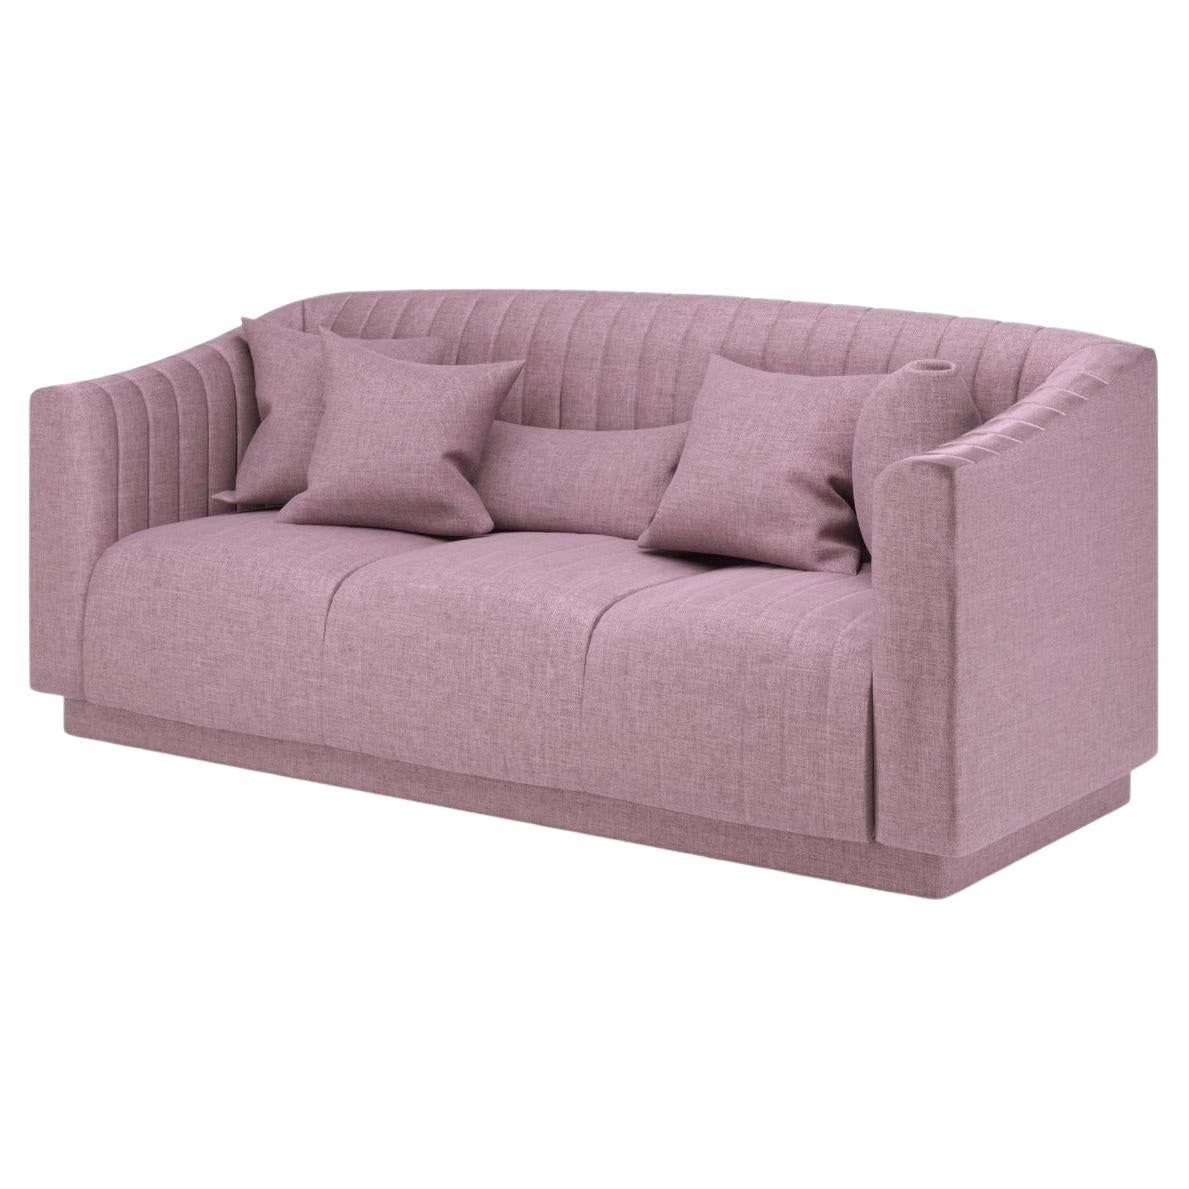 Fliederfarbenes modernes Uphostery-Sofa aus Leinen